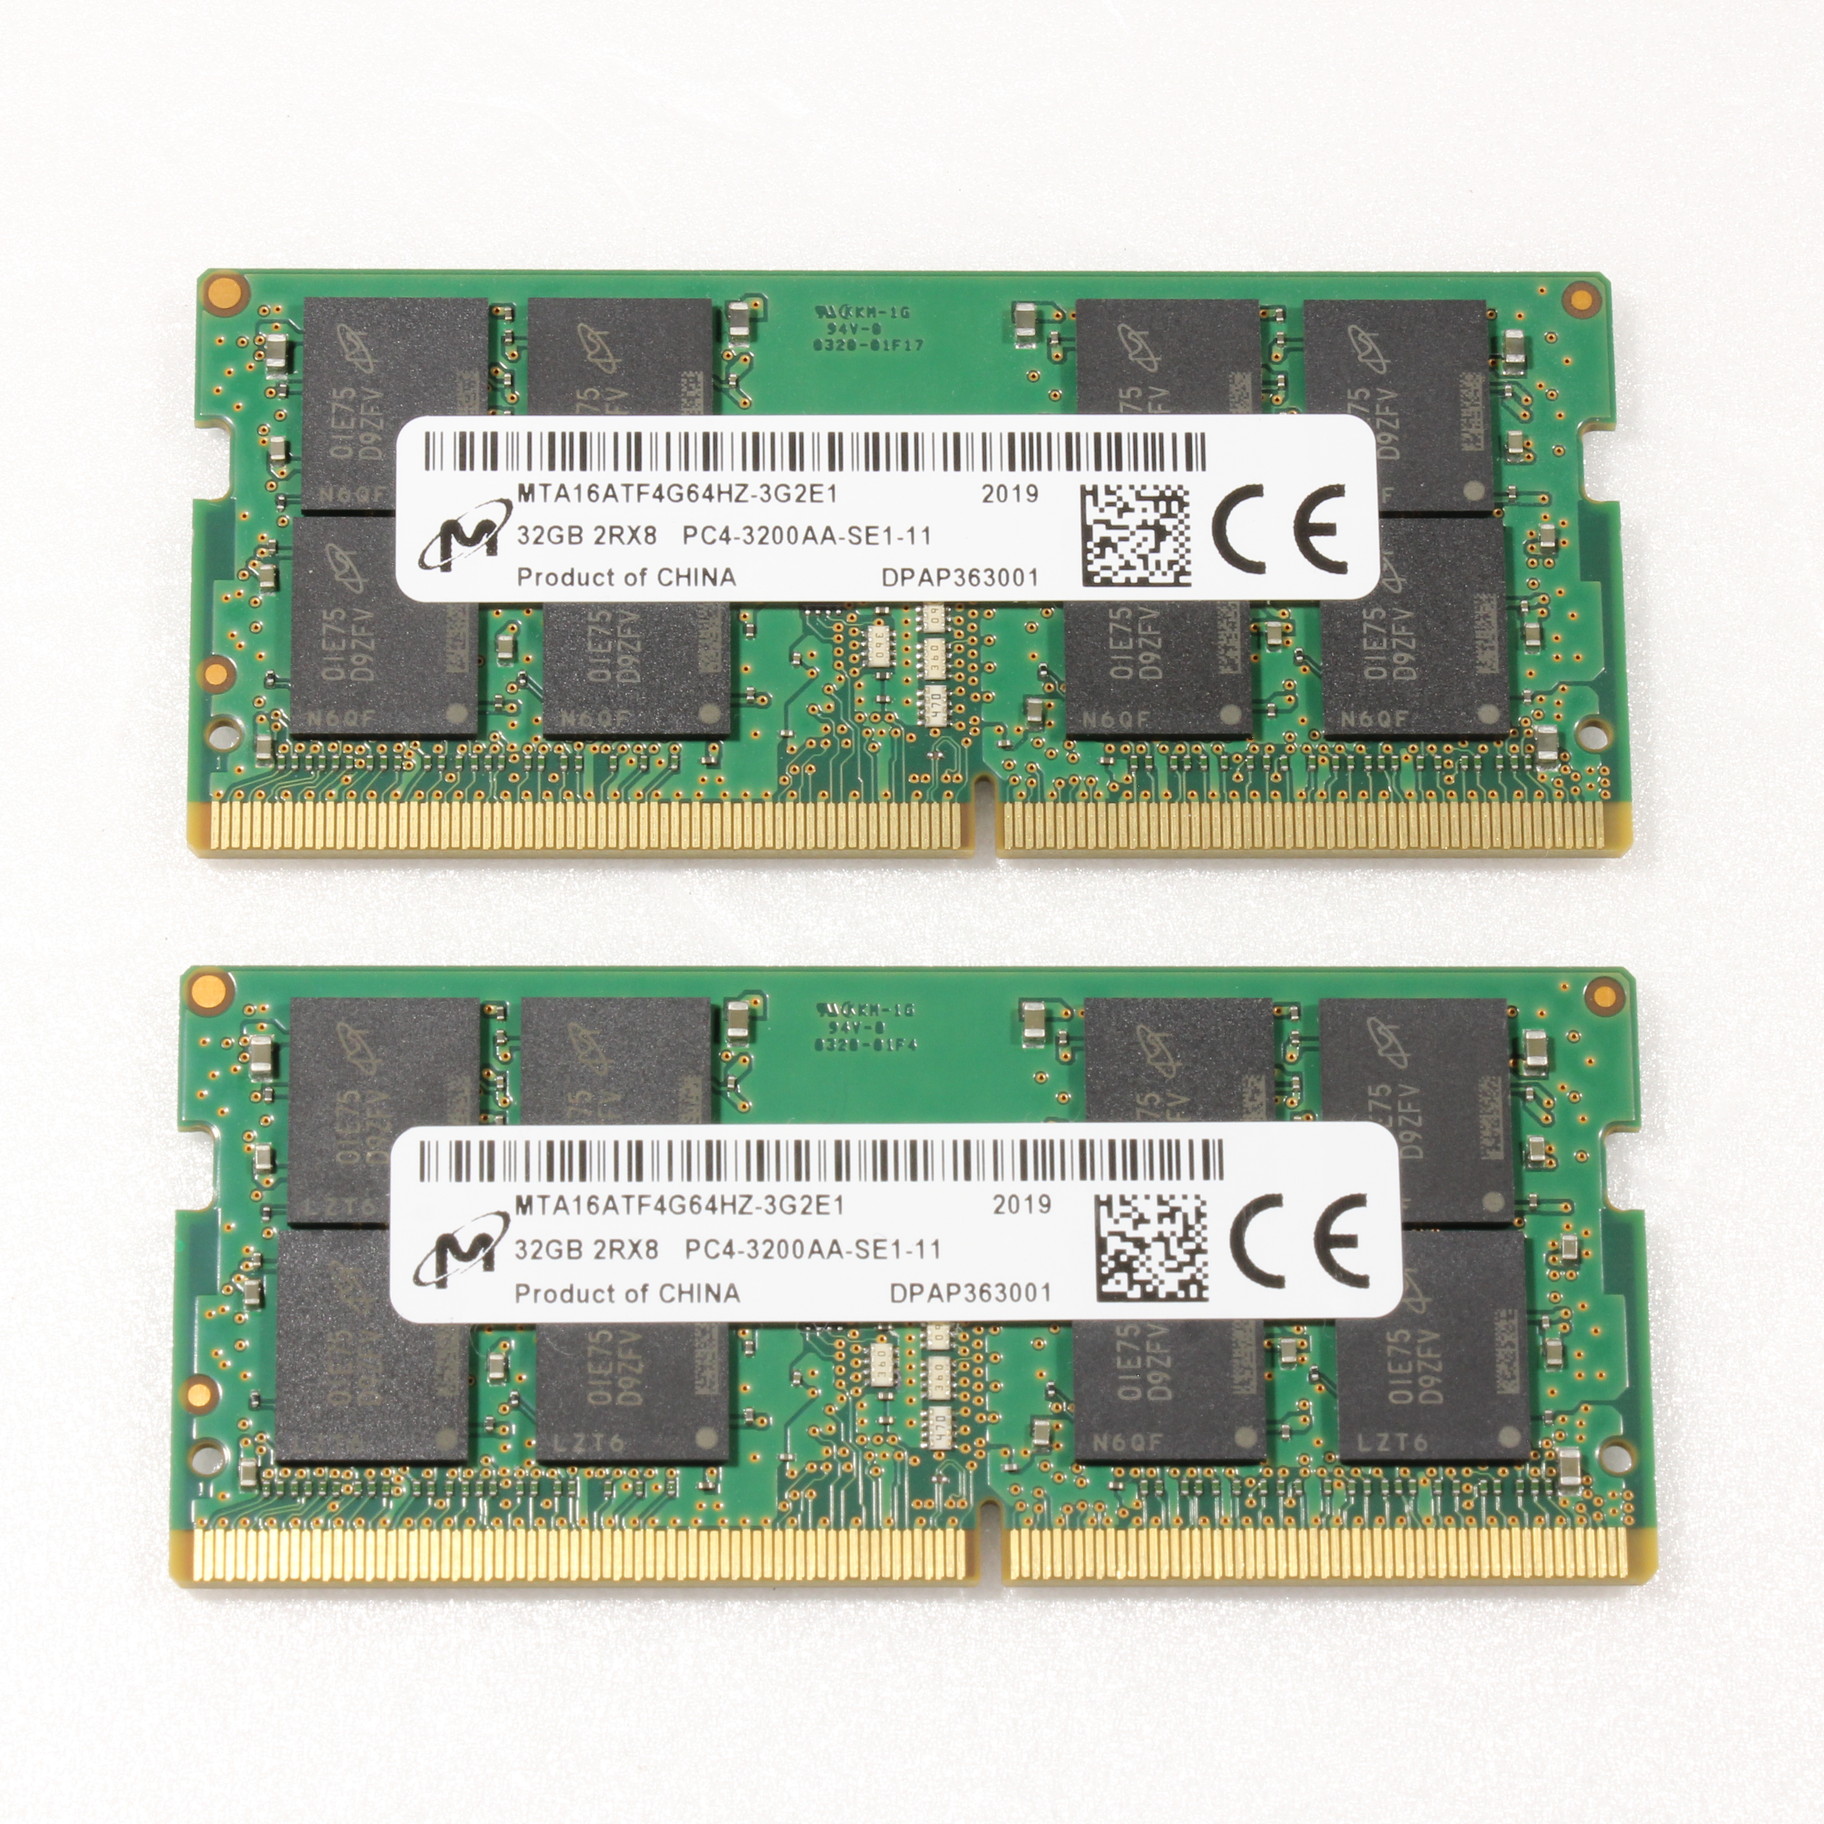 驚きの値段】 32GB 2枚組 SO-DIMM PC4-3200AA(DDR4) リール